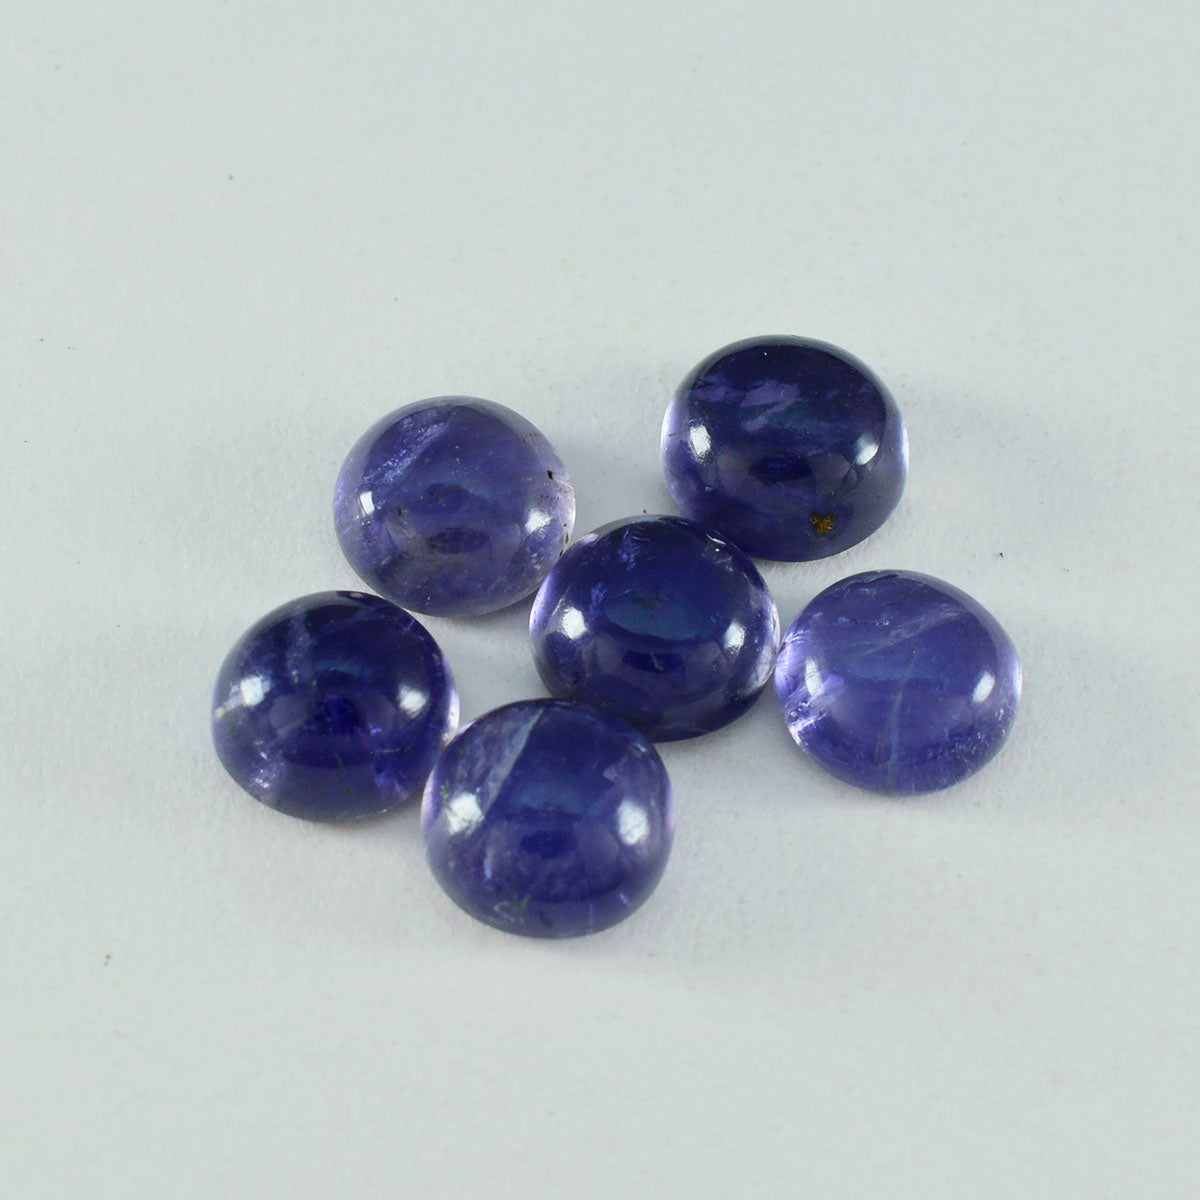 Riyogems 1PC blauwe ioliet cabochon 15x15 mm ronde vorm knappe kwaliteit losse edelsteen